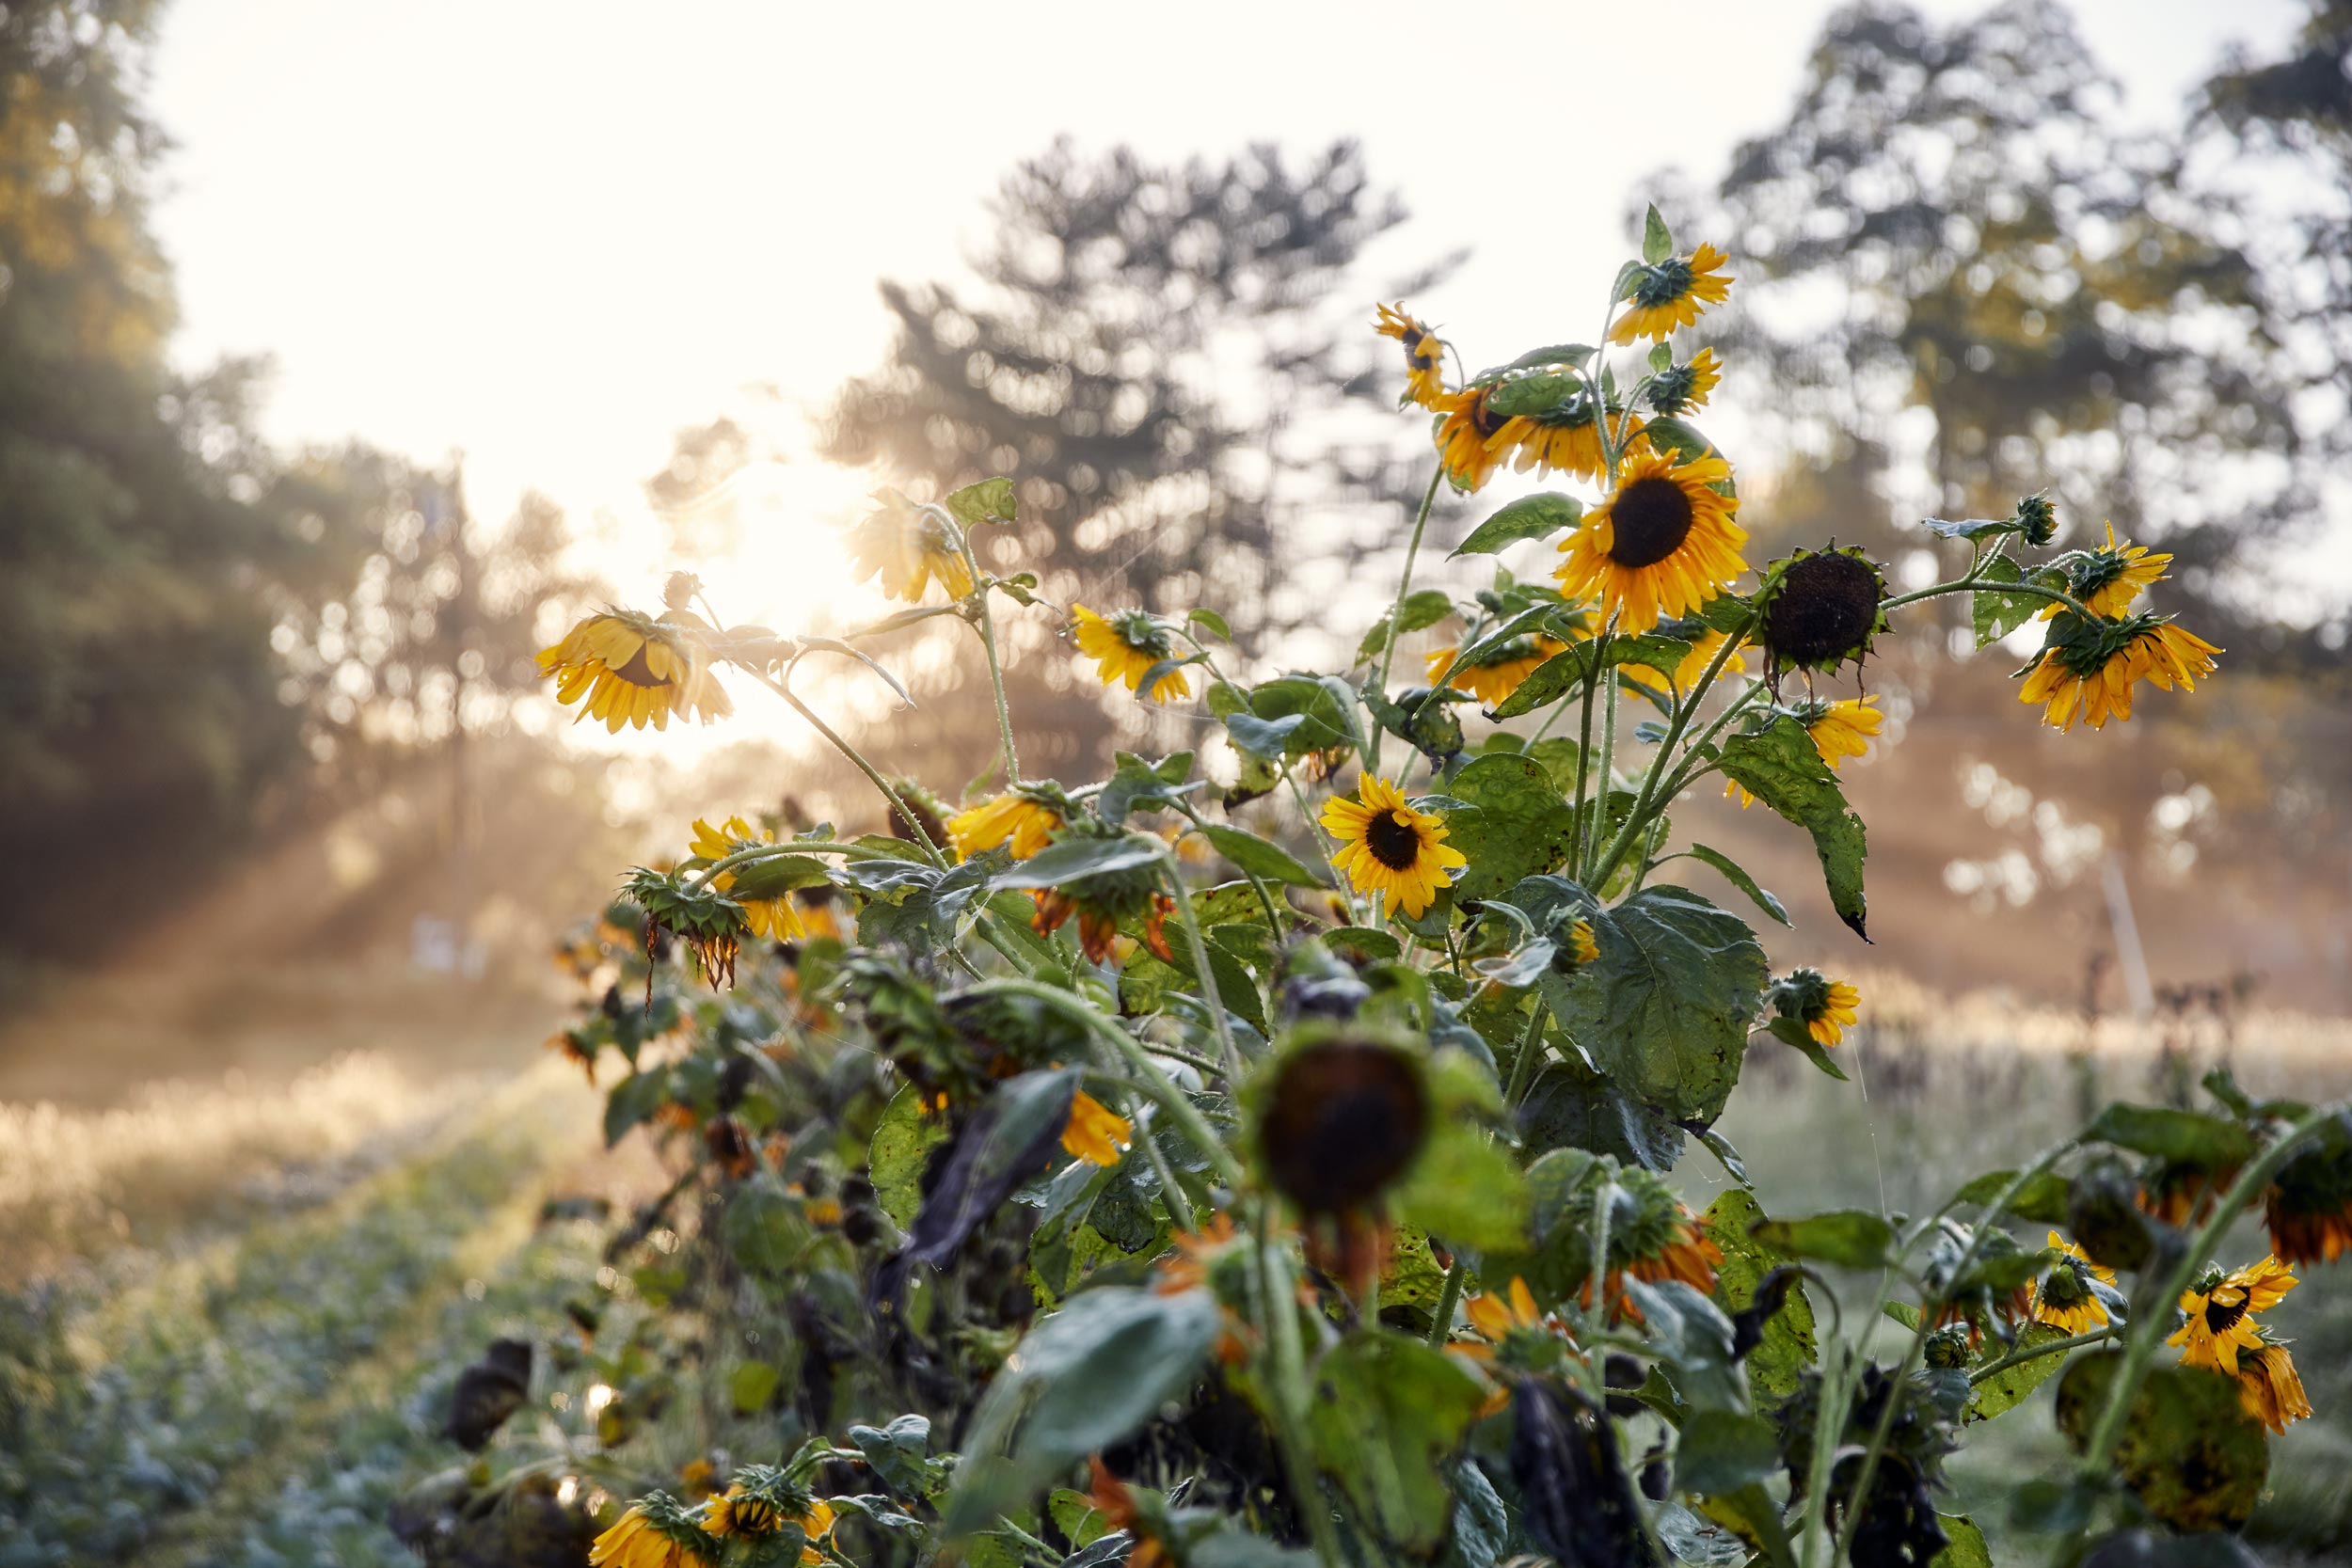 sunflowers-on-farm-dc-commercial-photography-eli-meir-kaplan